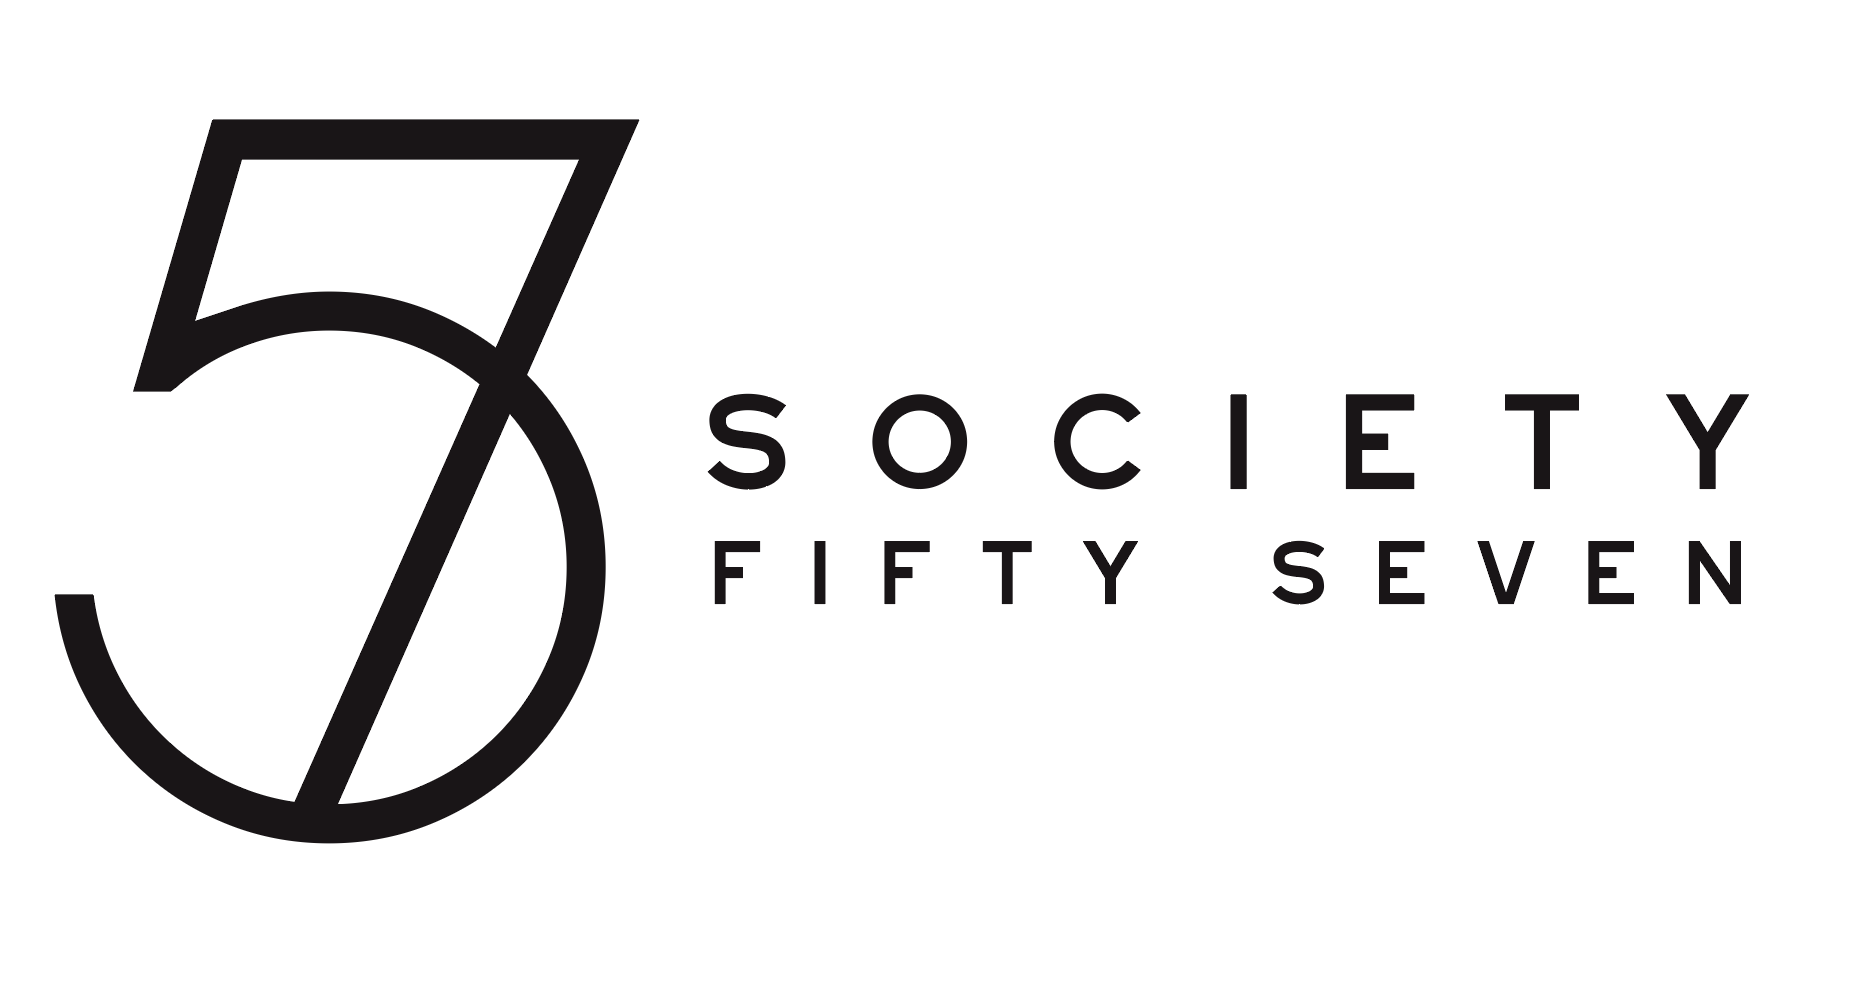 SOCIETY 57